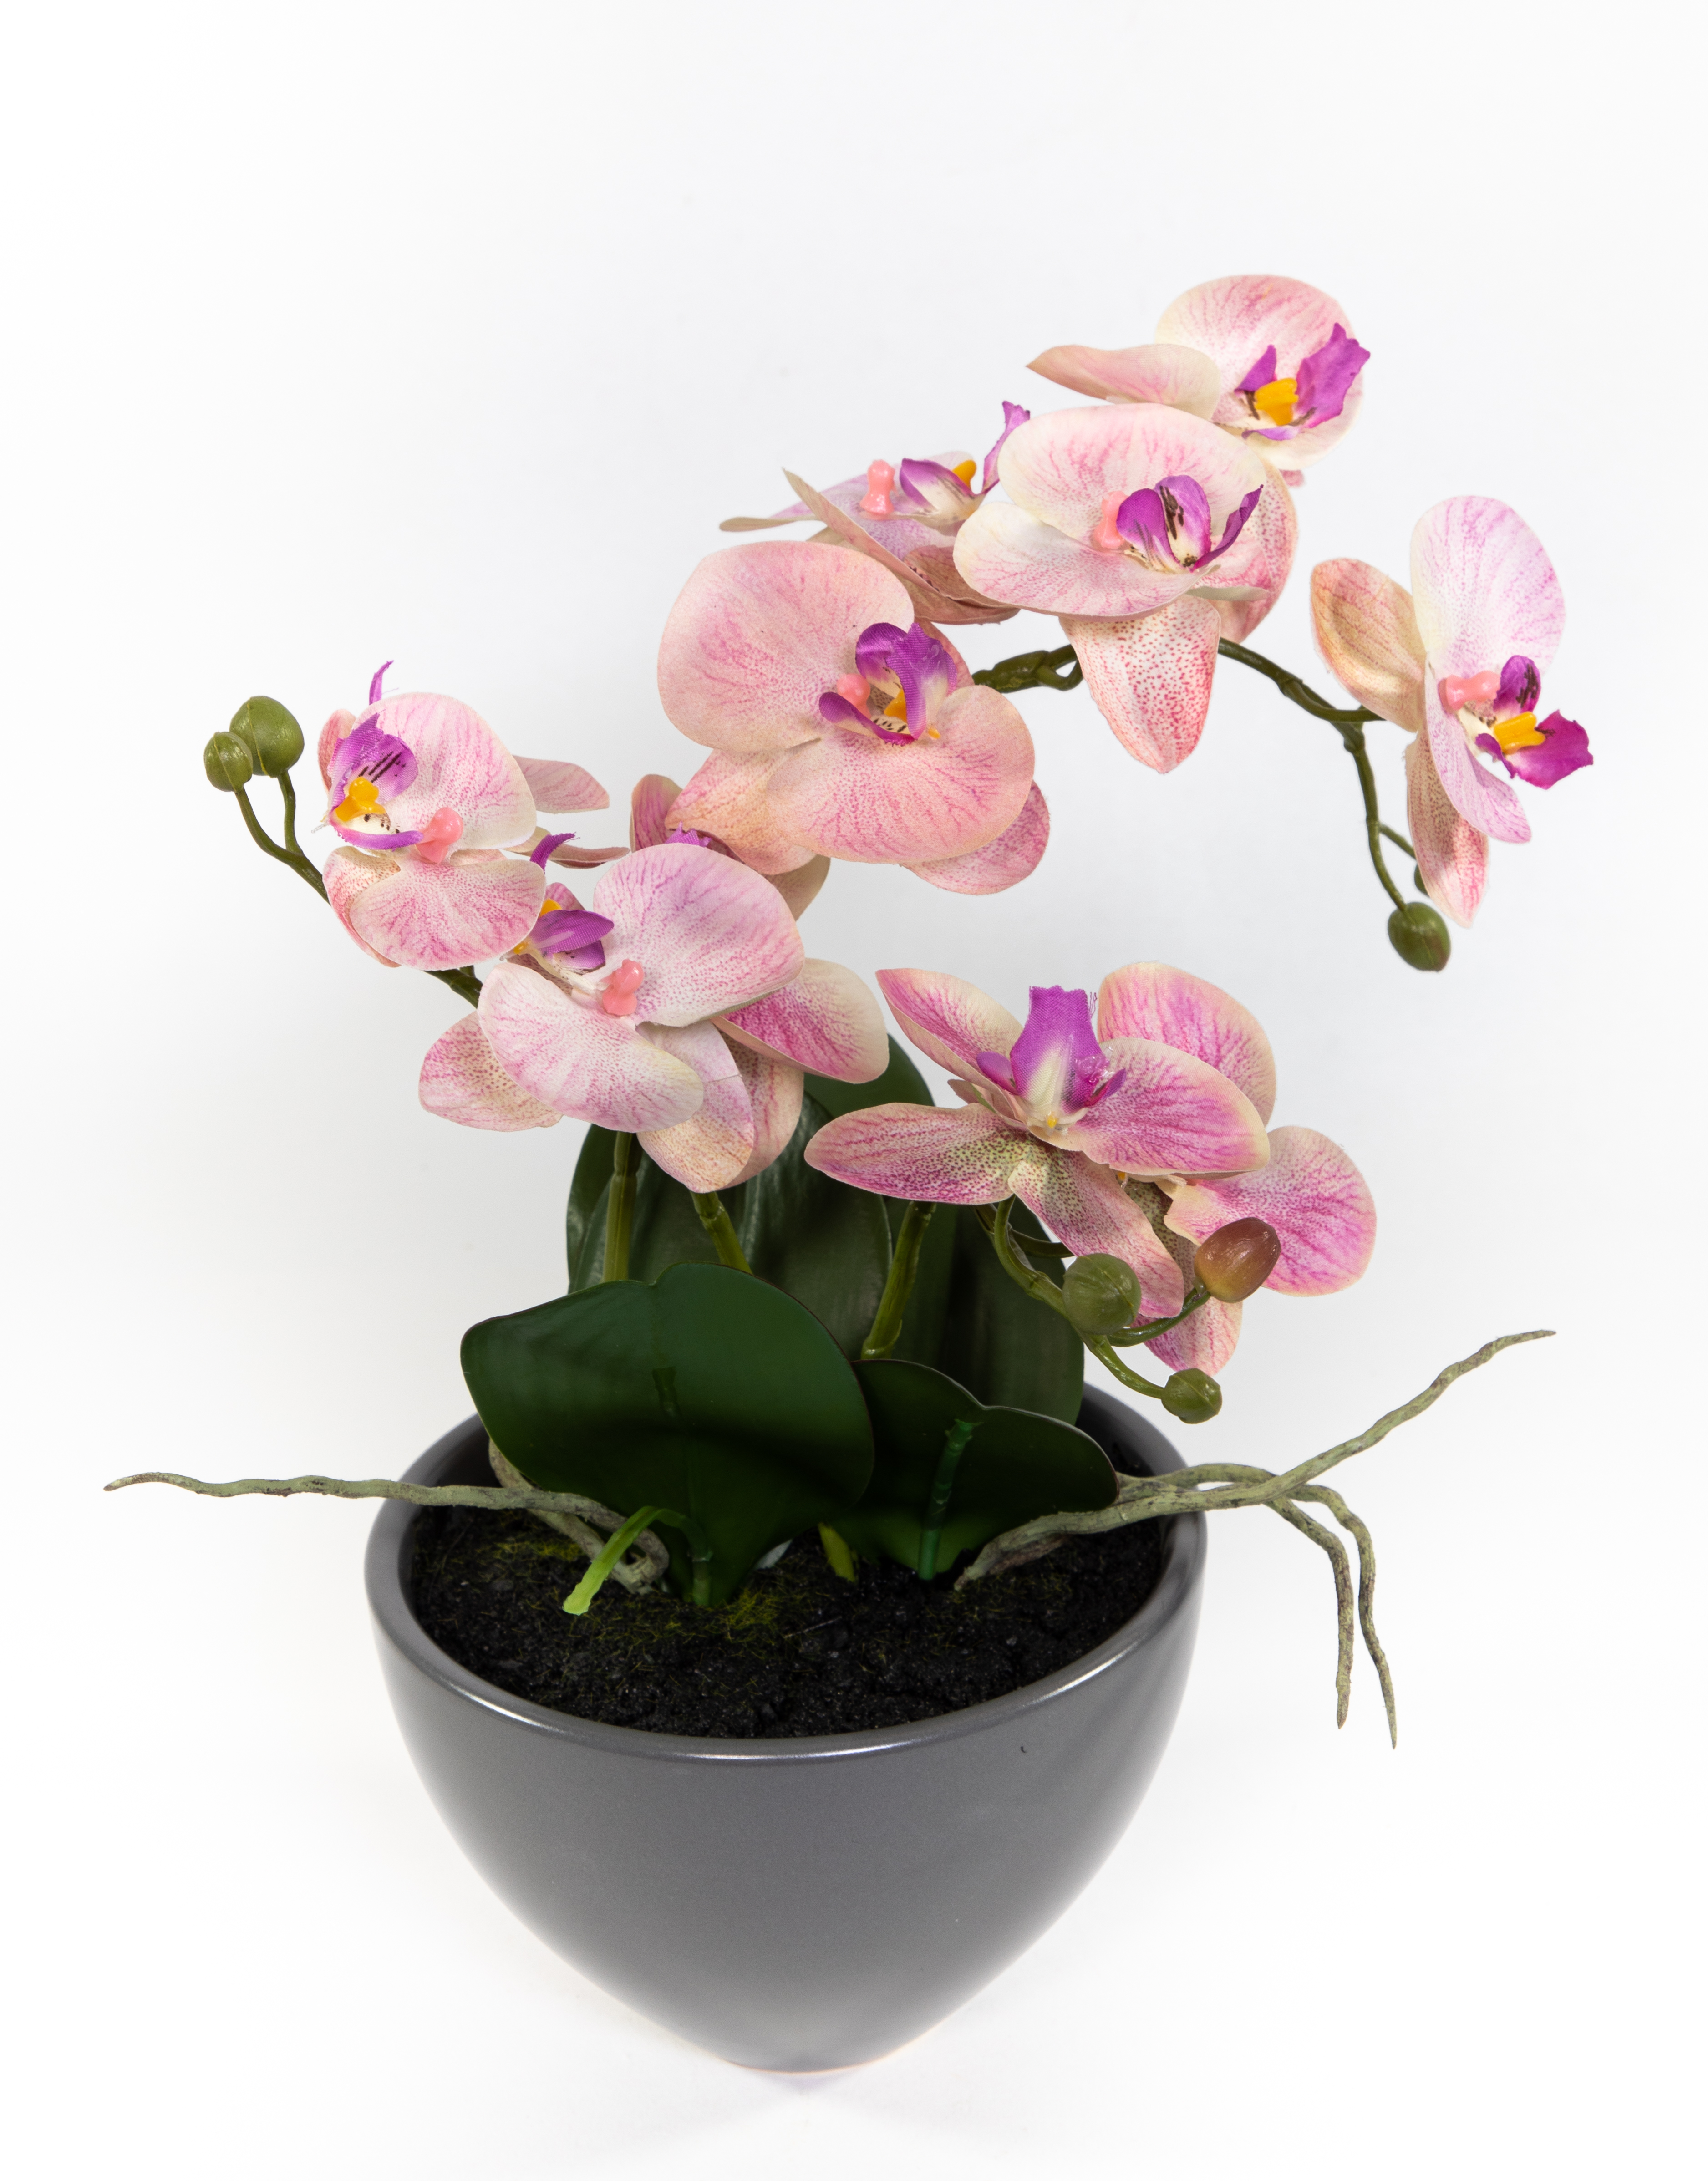 Orchidee 38x26cm rosa-pink in grauer Keramikschale DP Kunstblumen künstliche Blumen Phalaenopsis